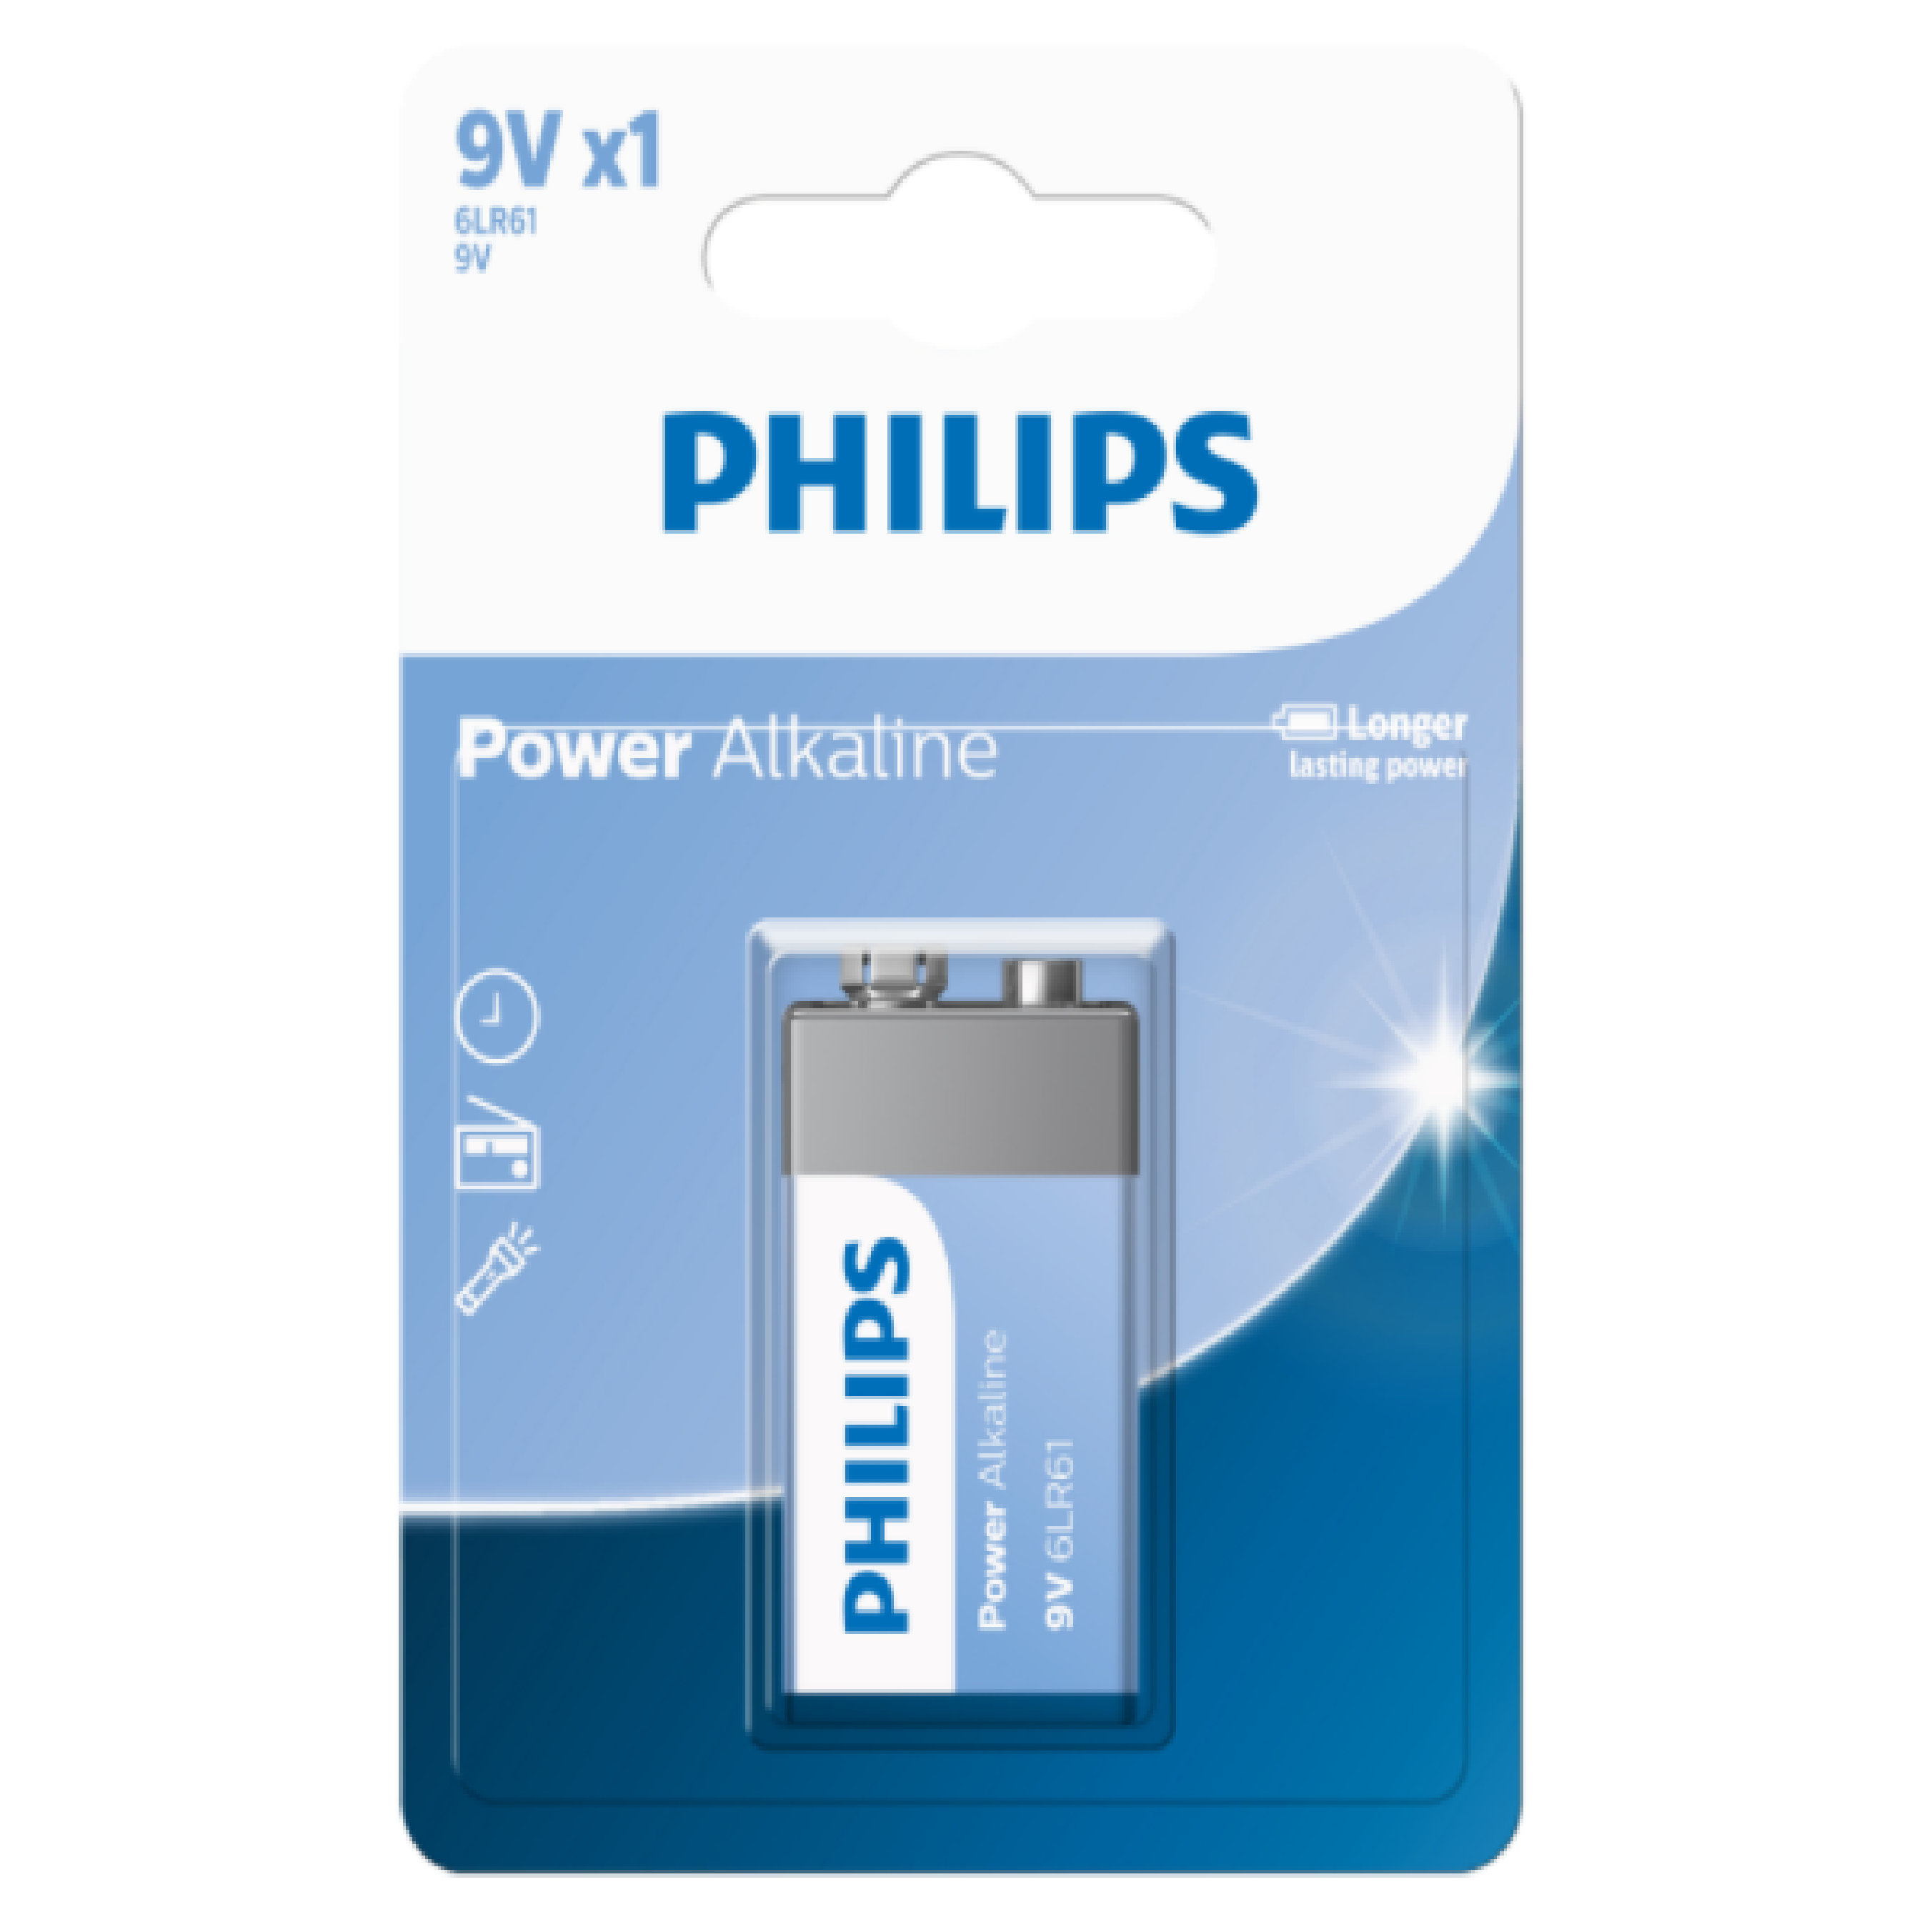 Philips 9V Power Alkaline Battery